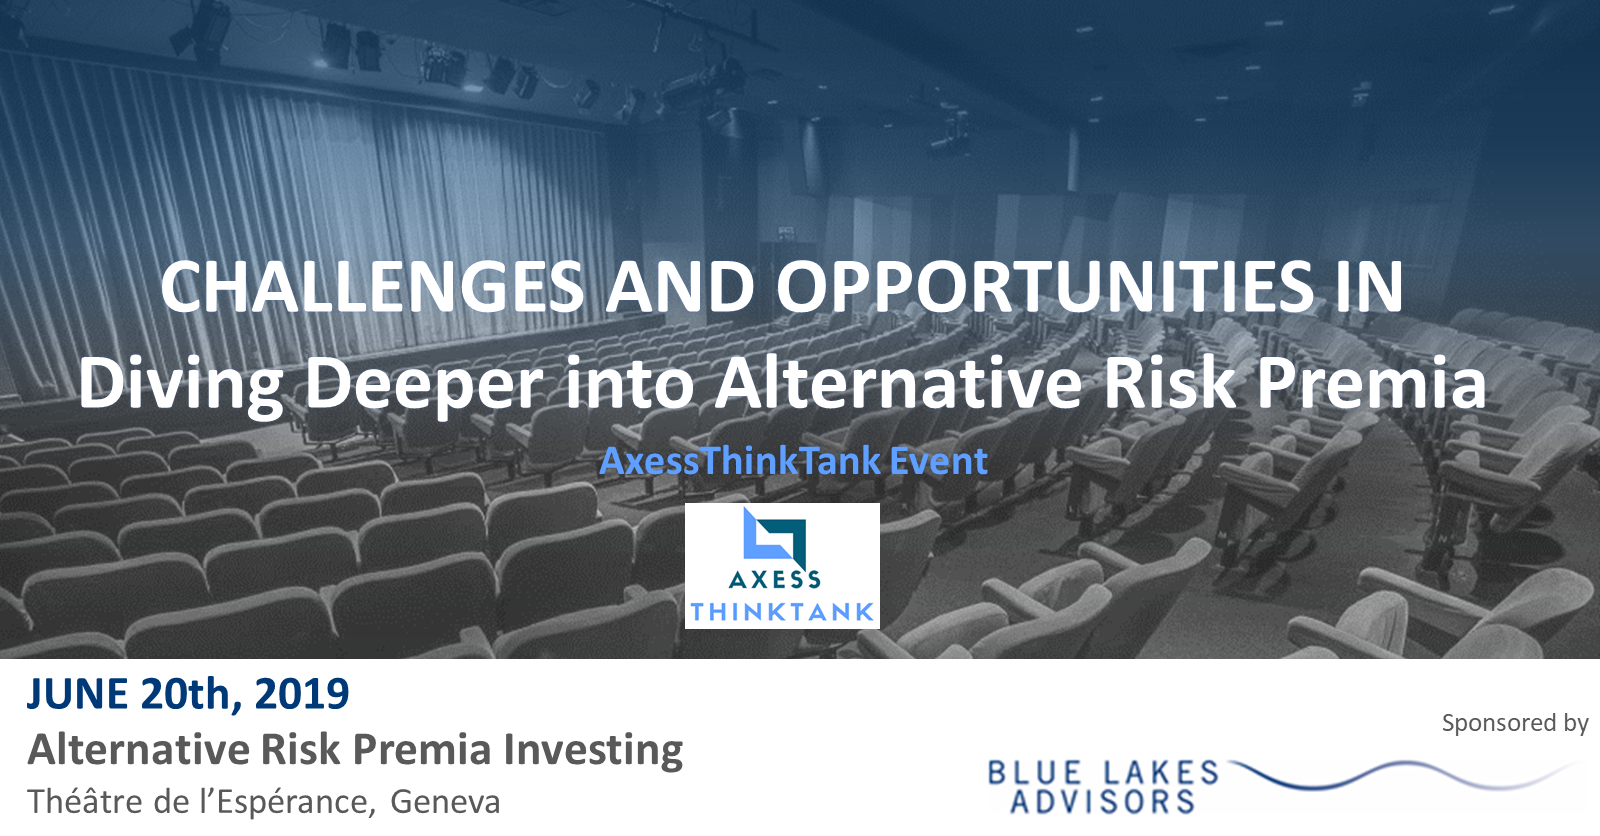 Blue-Lakes-Advisors-investment-finance blog-ATT-Event-2-LinkedIn-27.03.2018